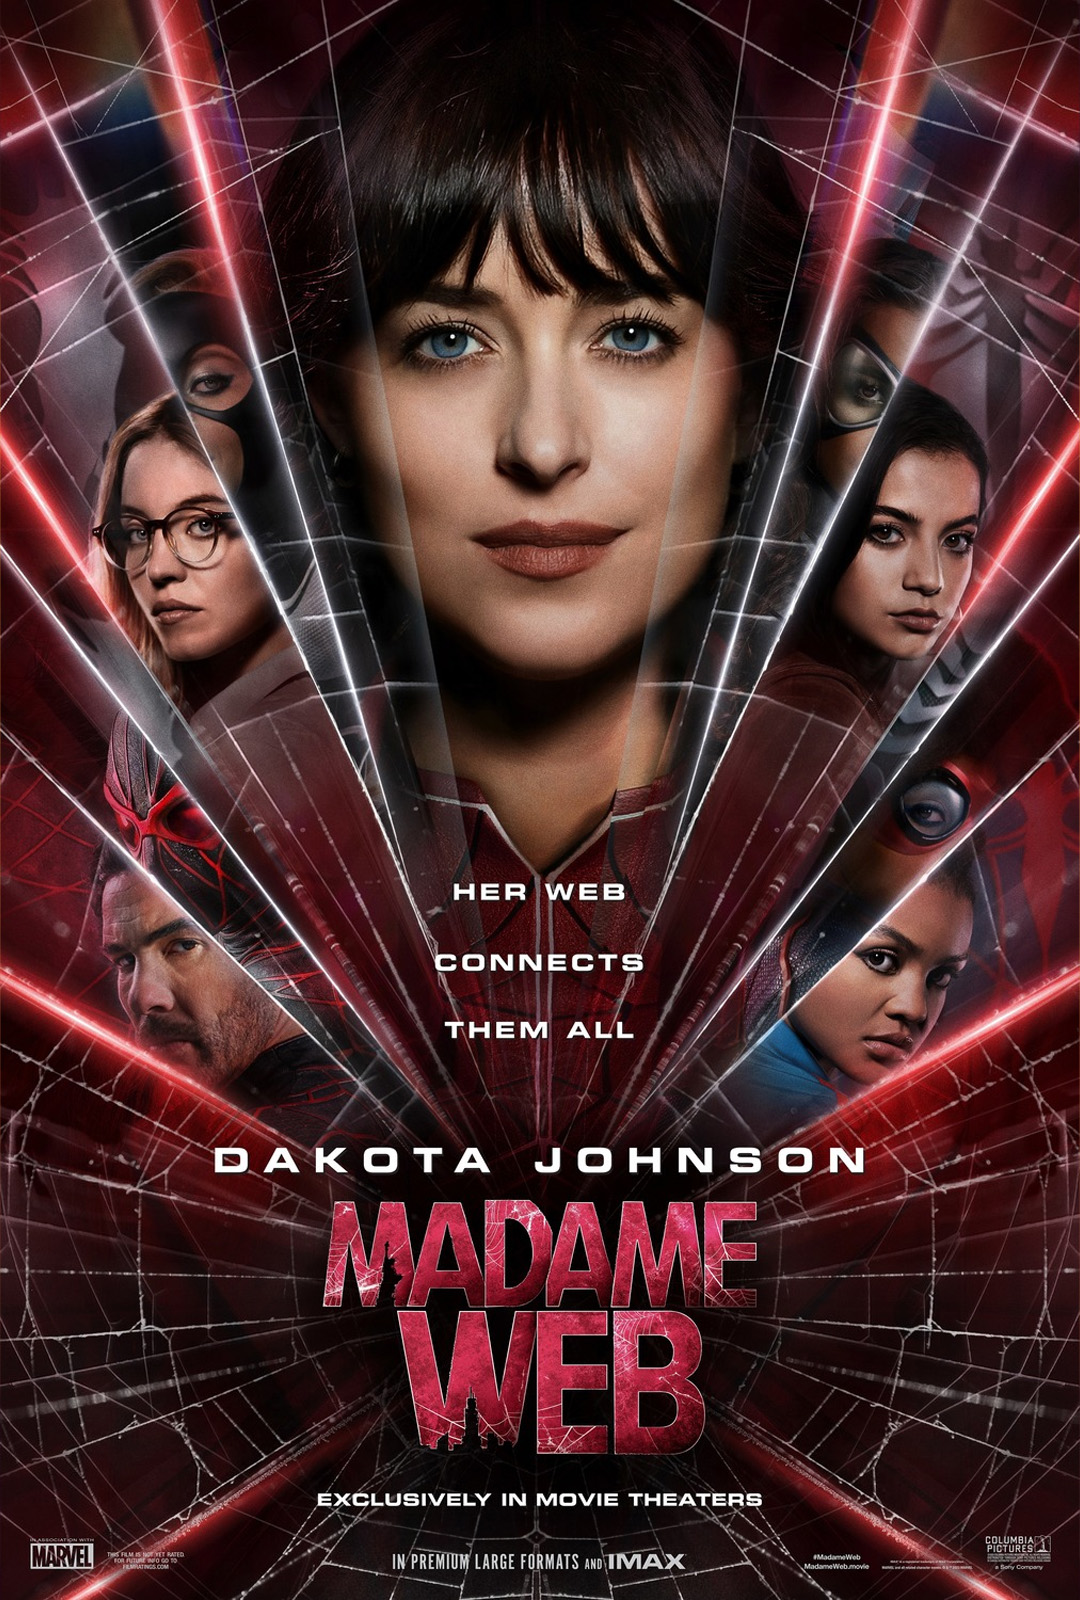 Movie Poster: Madame Web